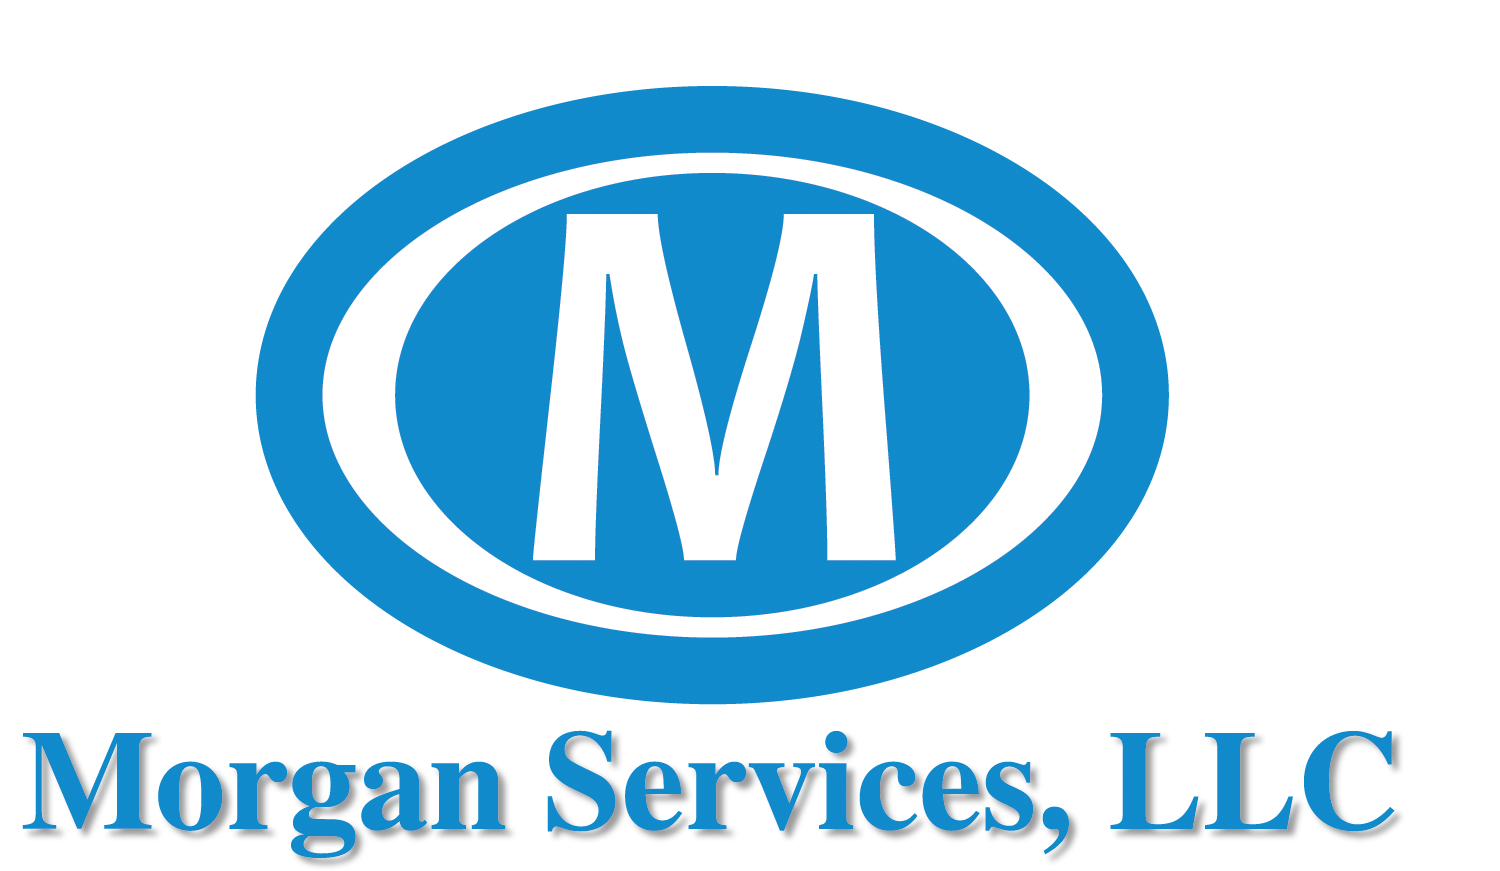 Morgan Services, LLC